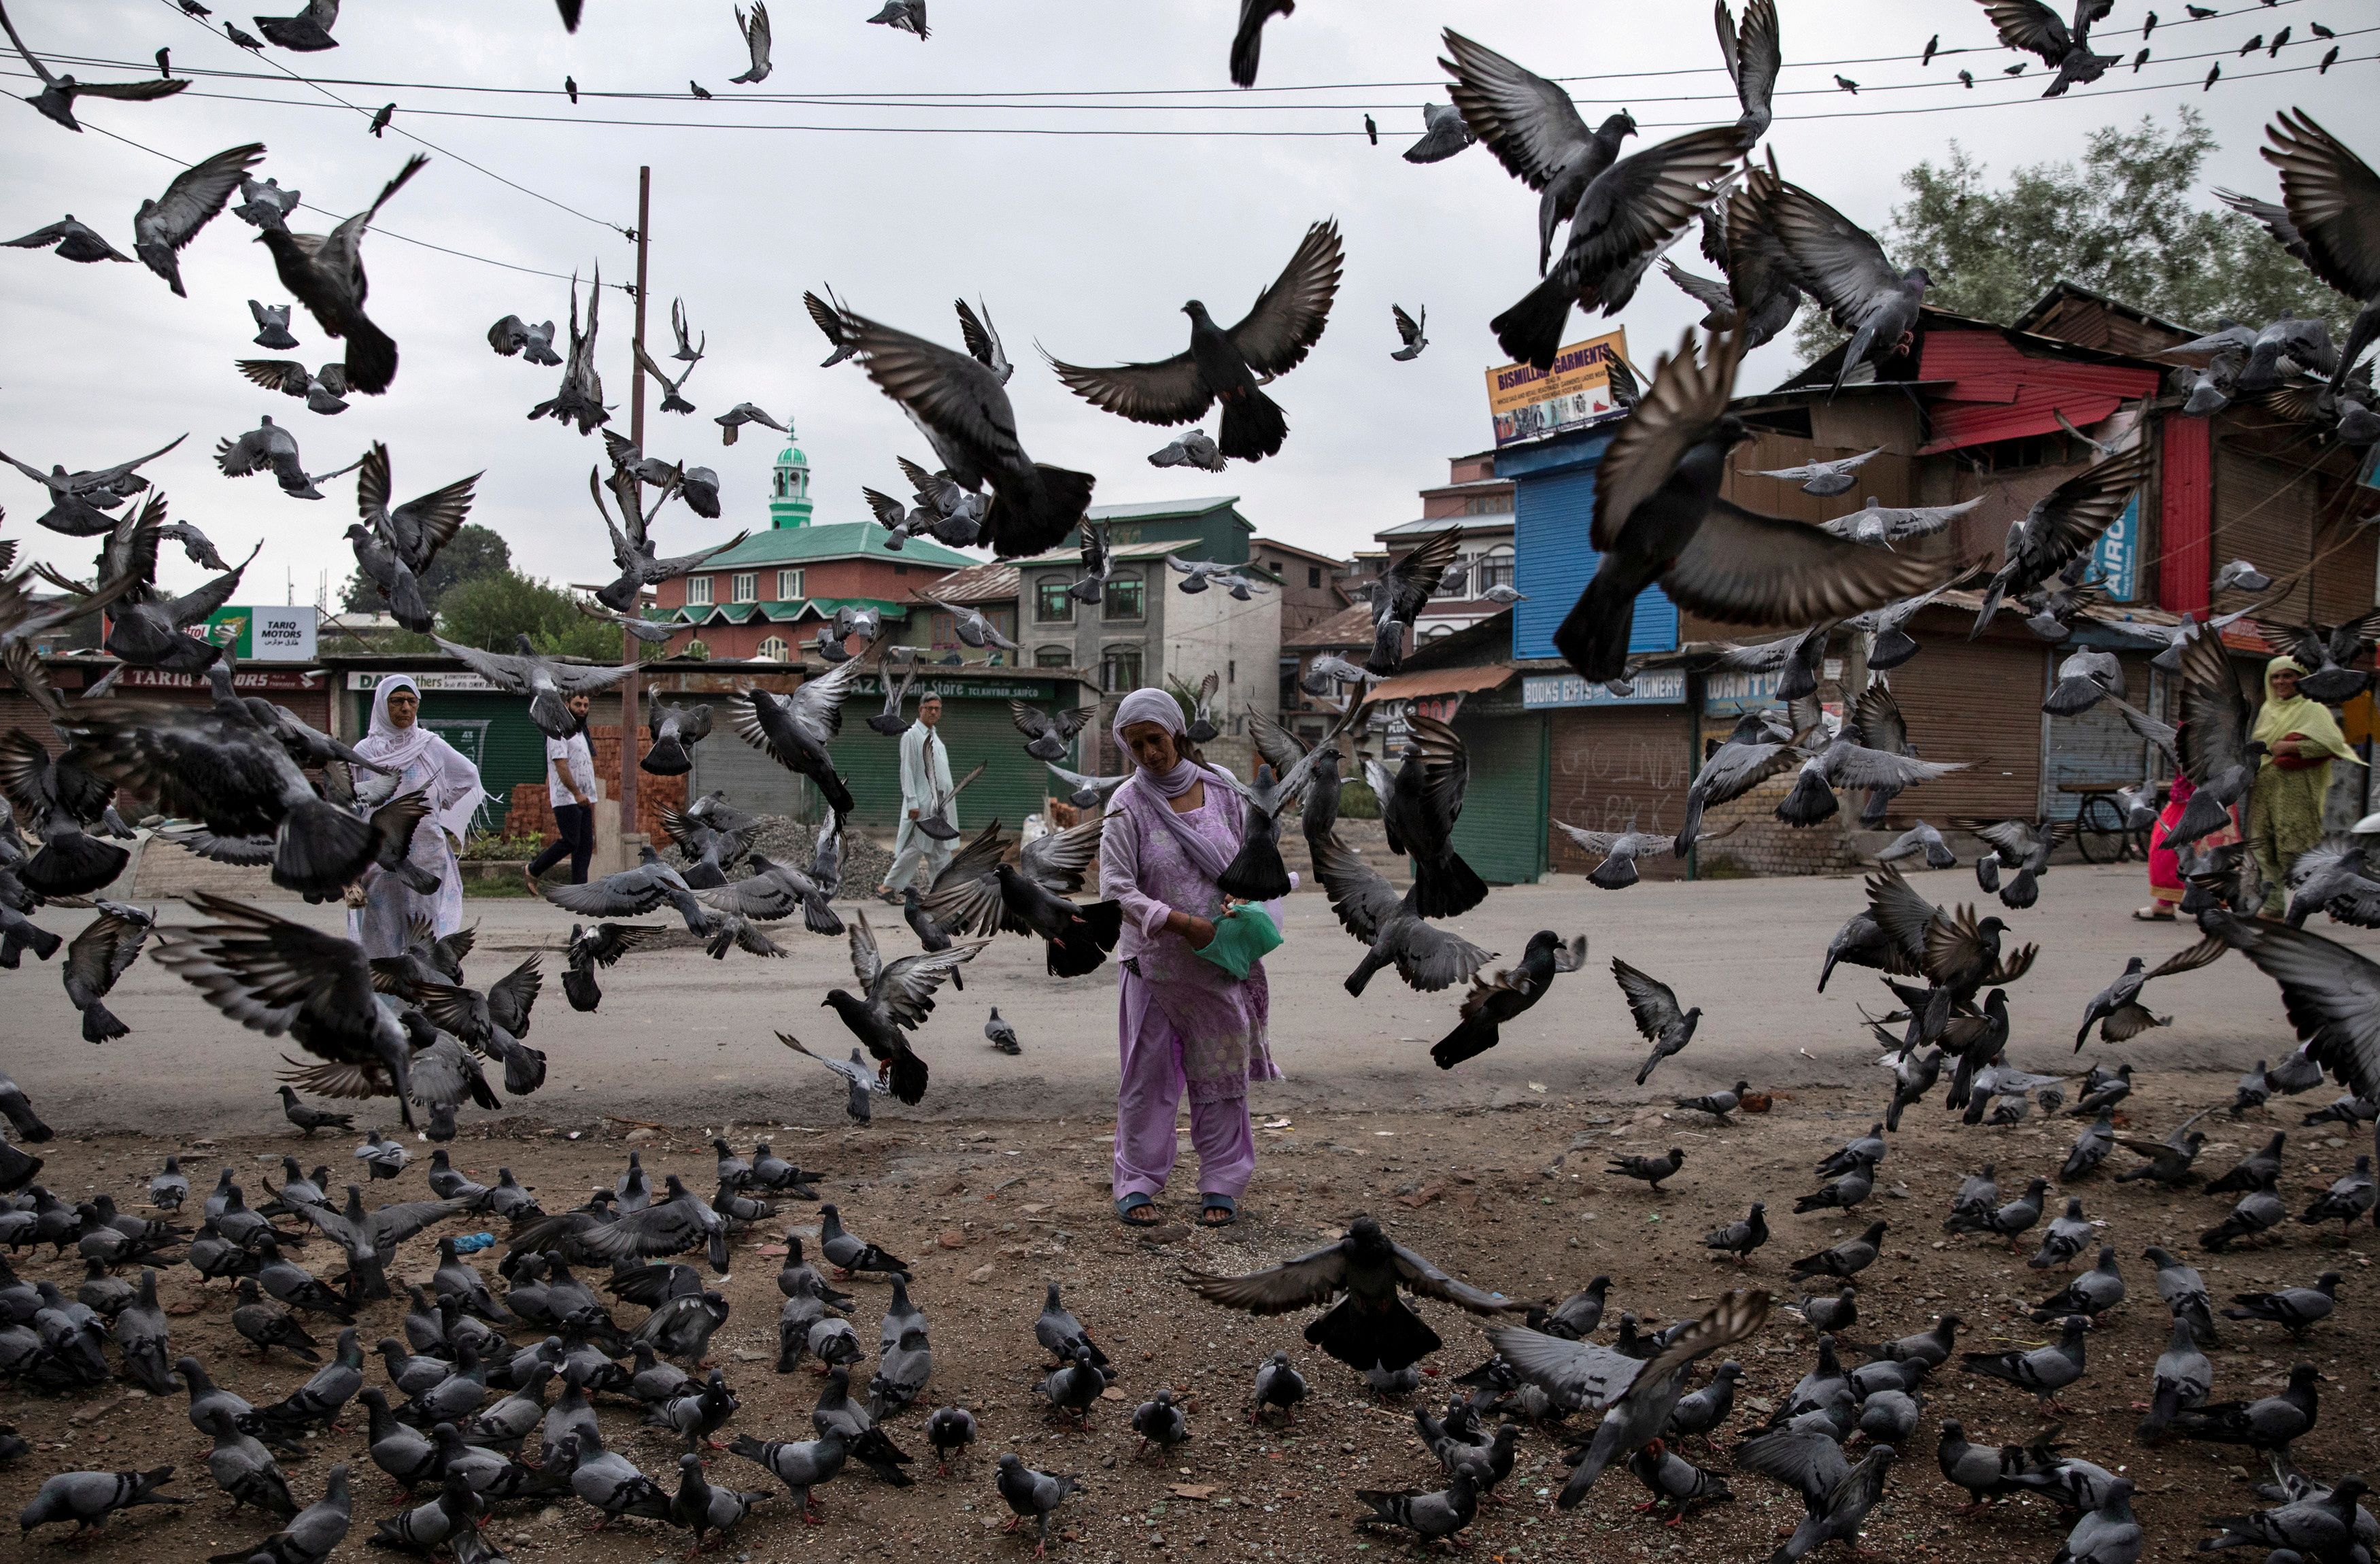 Una mujer de Cachemira alimenta a las palomas en una calle durante las restricciones tras la eliminación del estatus constitucional especial para Cachemira por parte del gobierno, en Srinagar, el 11 de agosto de 2019.